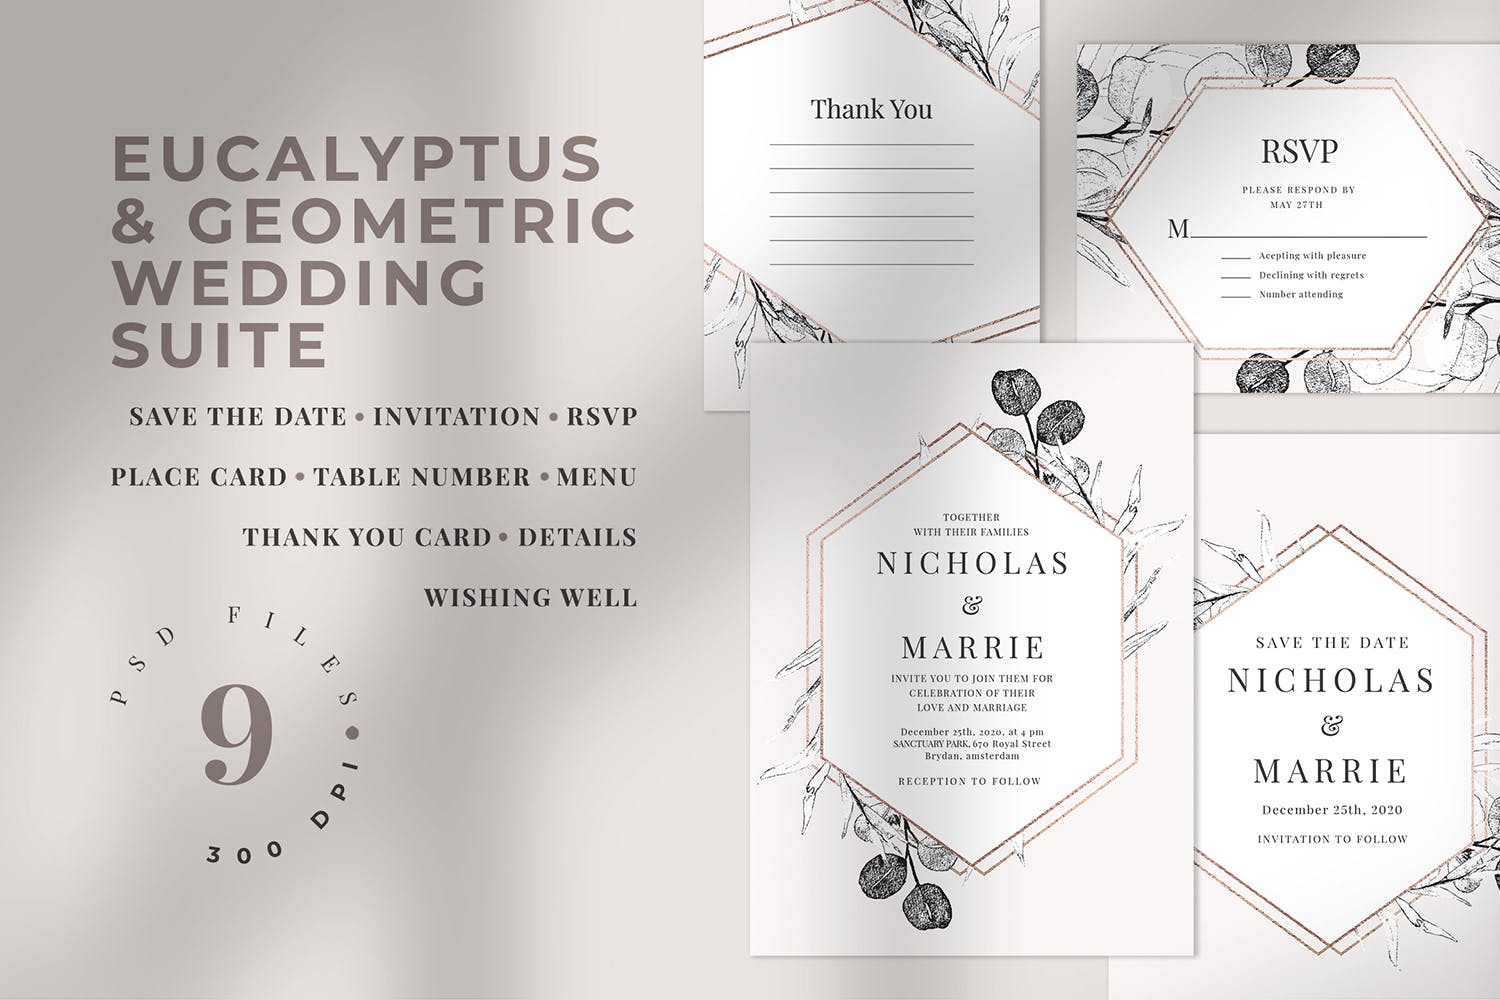 桉树和几何图形手绘图案背景婚礼邀请函设计套件 Eucalyptus & Geometric Wedding Suite插图(1)